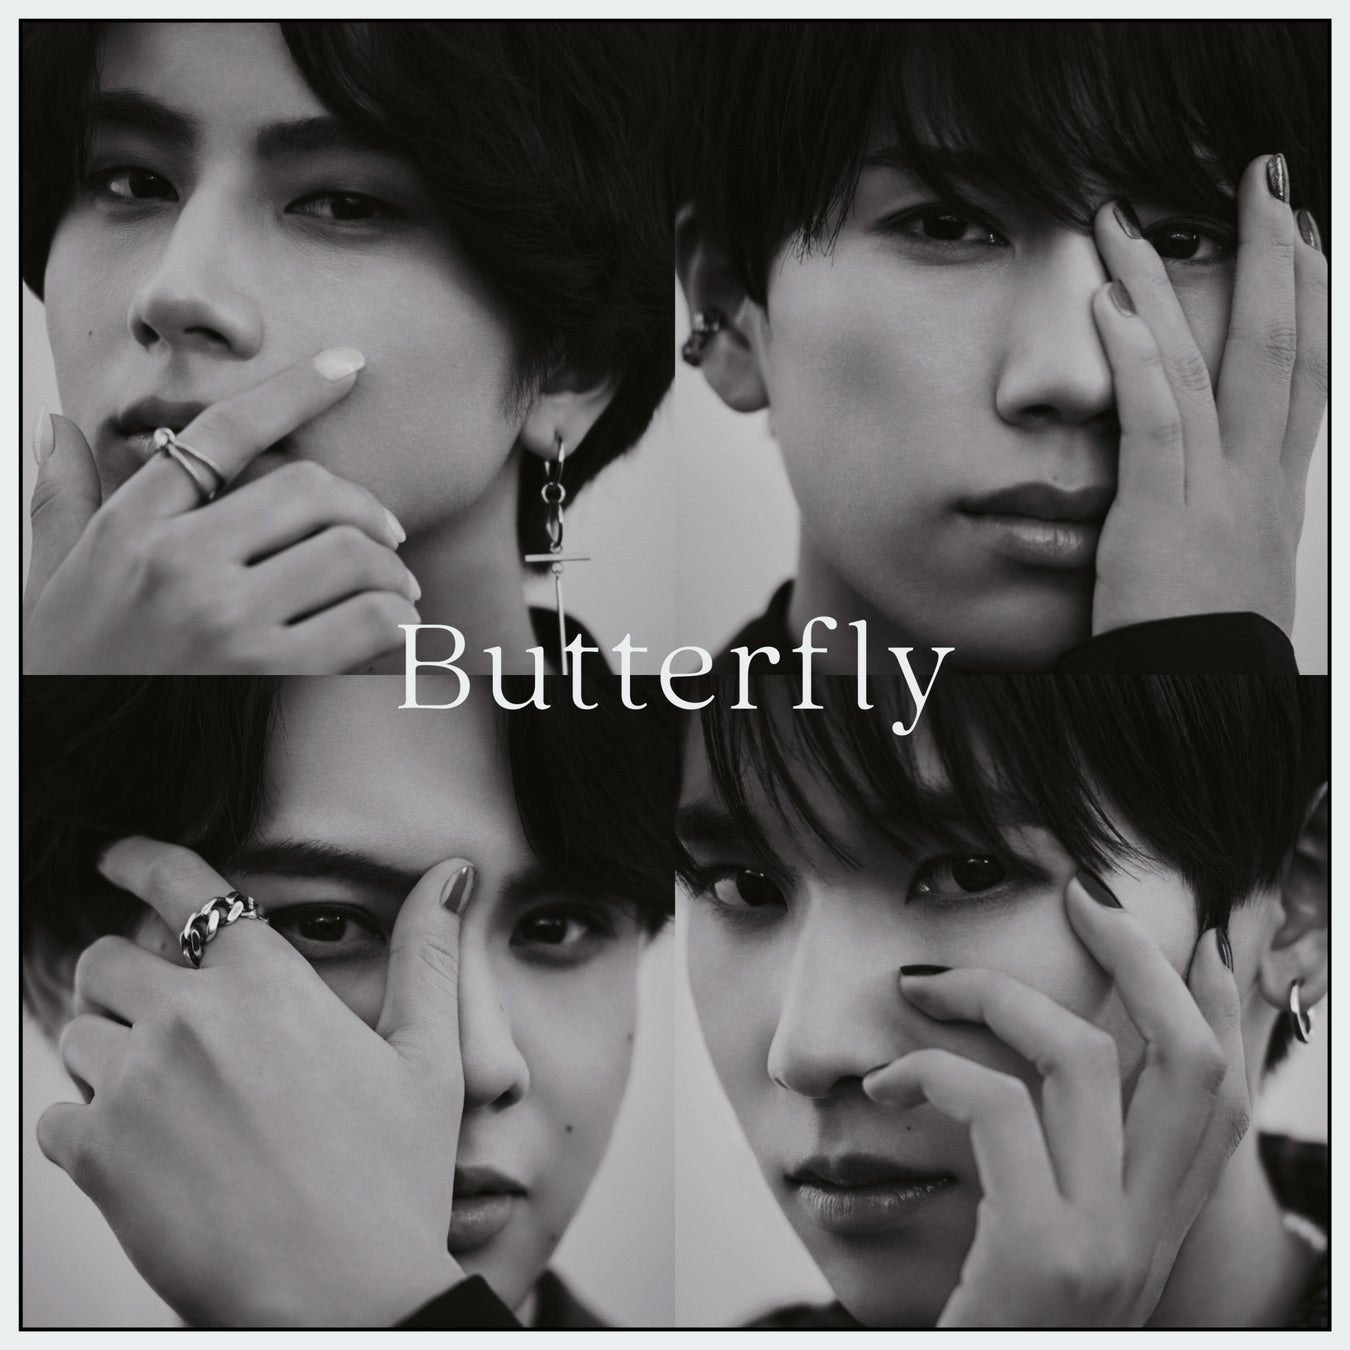 美容に特化した男性ボーカル&ダンスグループ「BBM(ビービーエム)」メジャーデビュー・デジタルシングル『Butterfly』のヴィジュアル公開!のサブ画像1